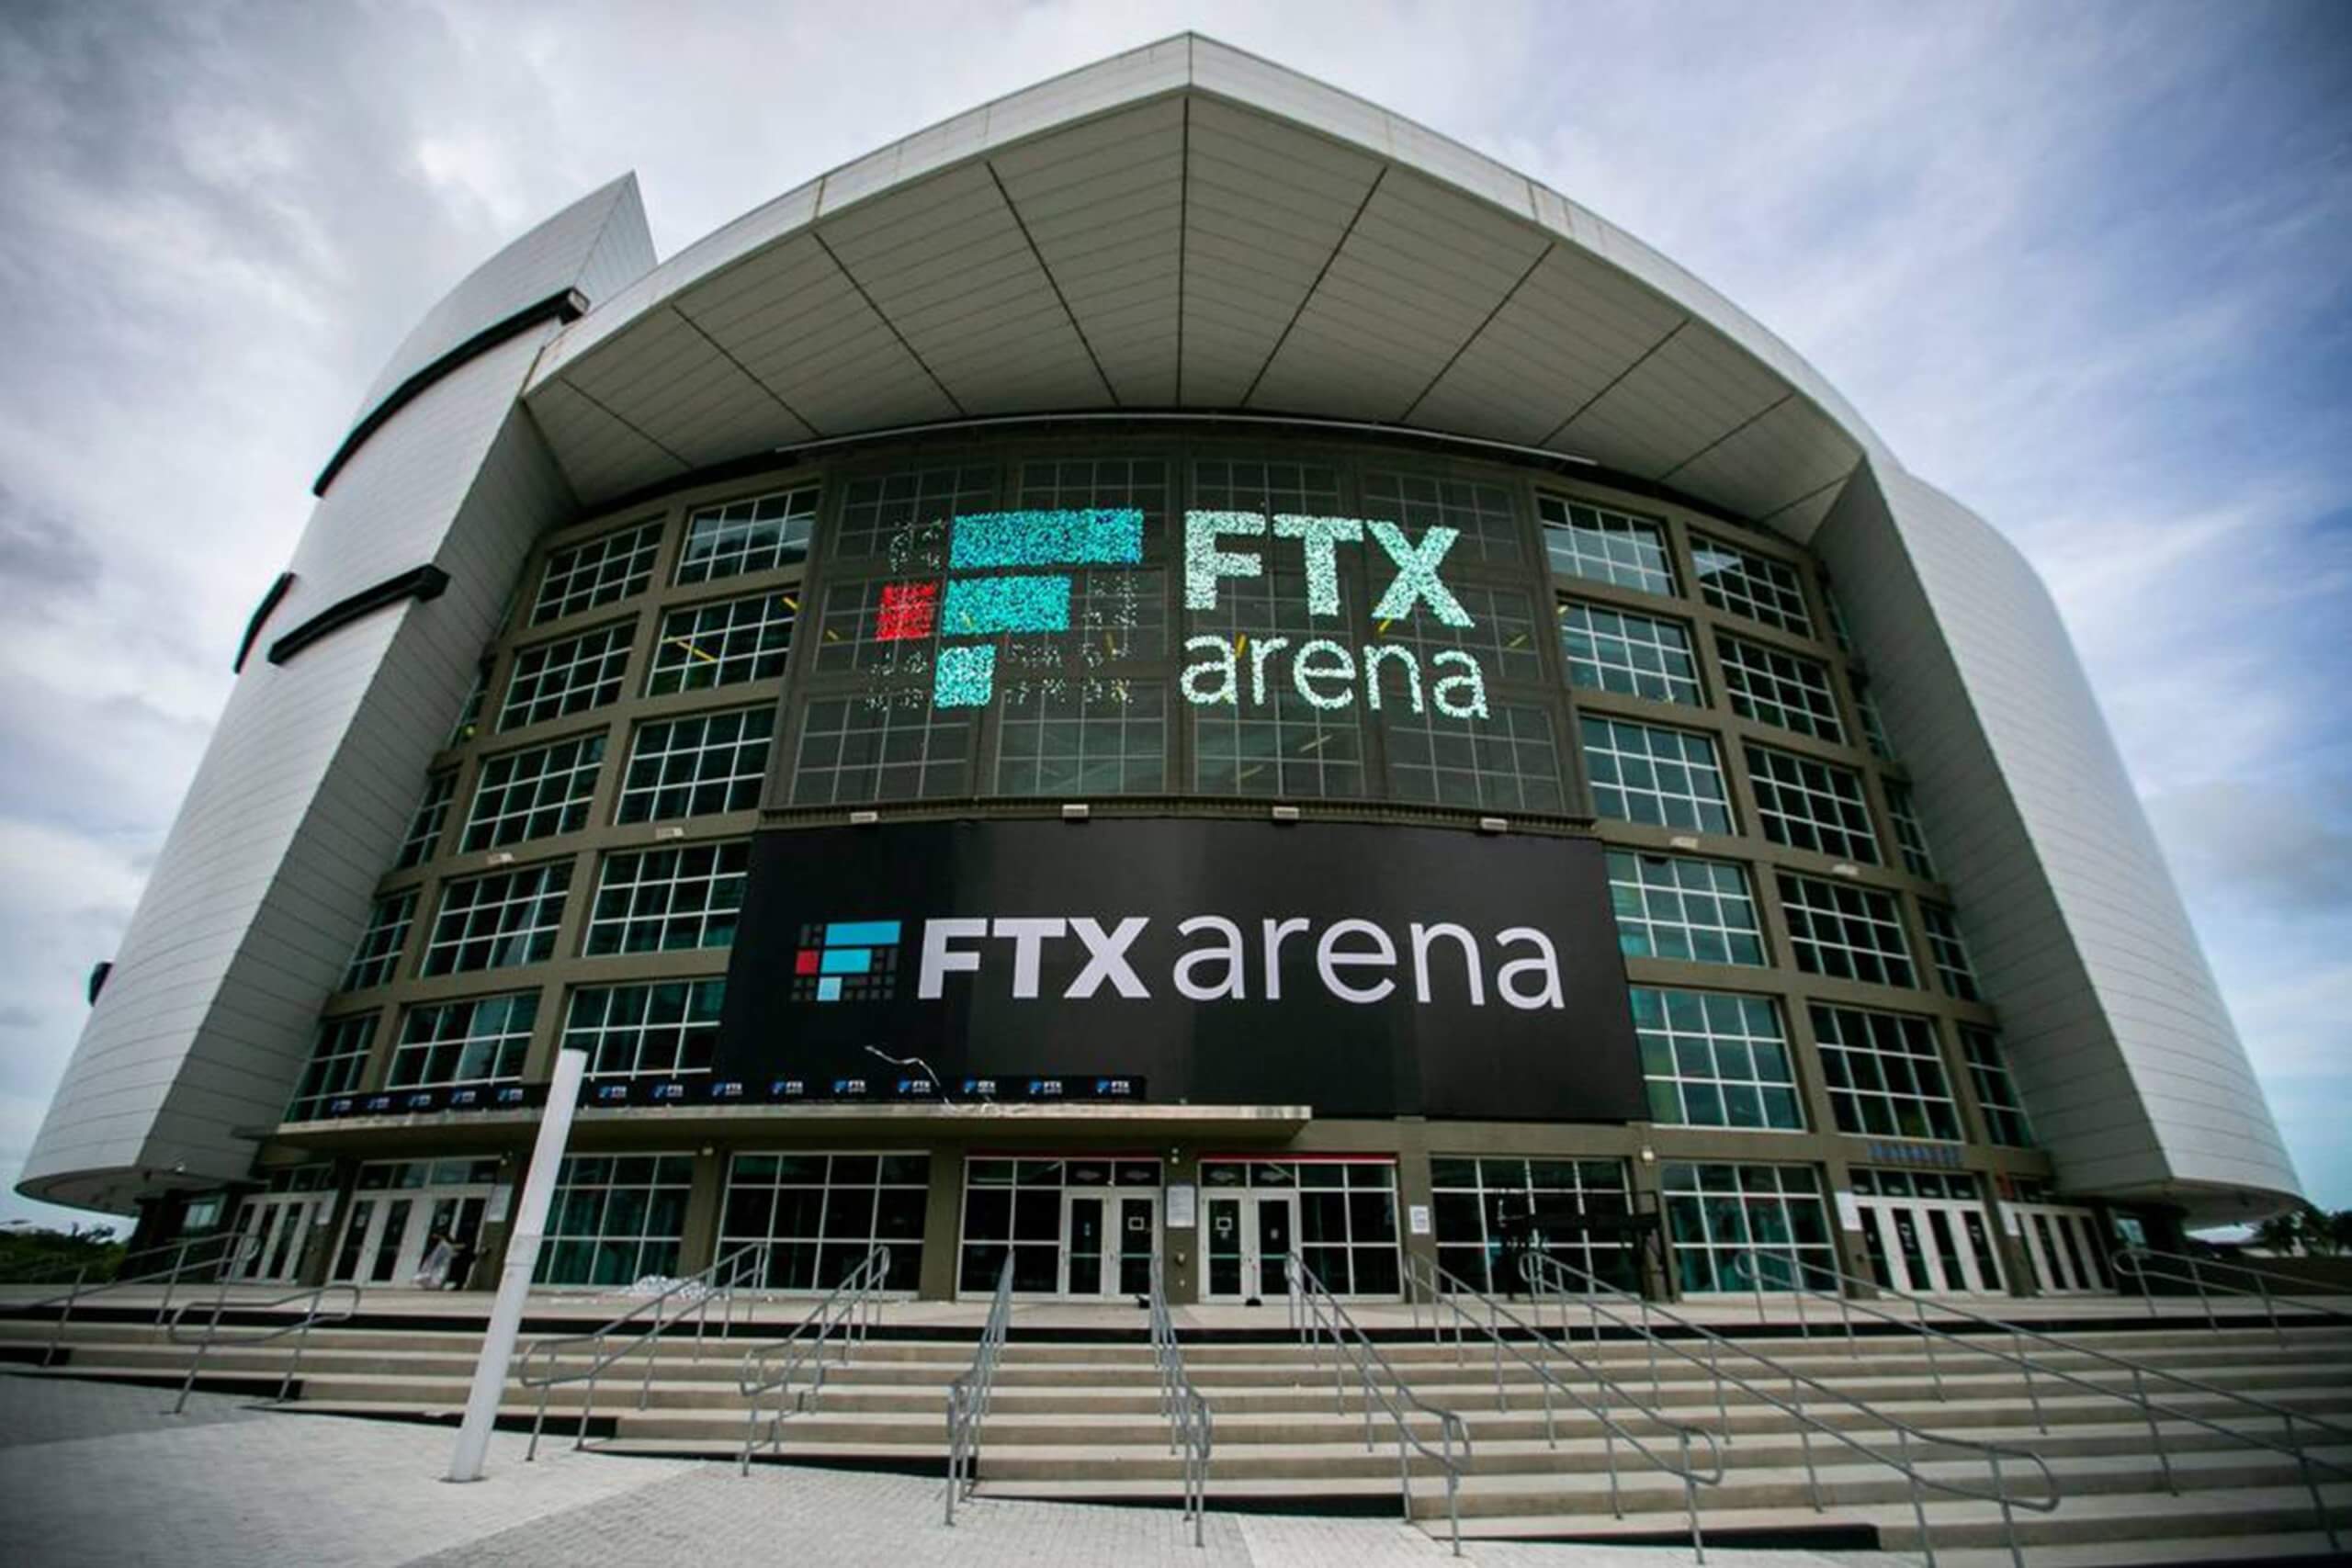 Что больше всего угрожает криптовалютам? Внешний вид стадиона FTX Arena. Фото.